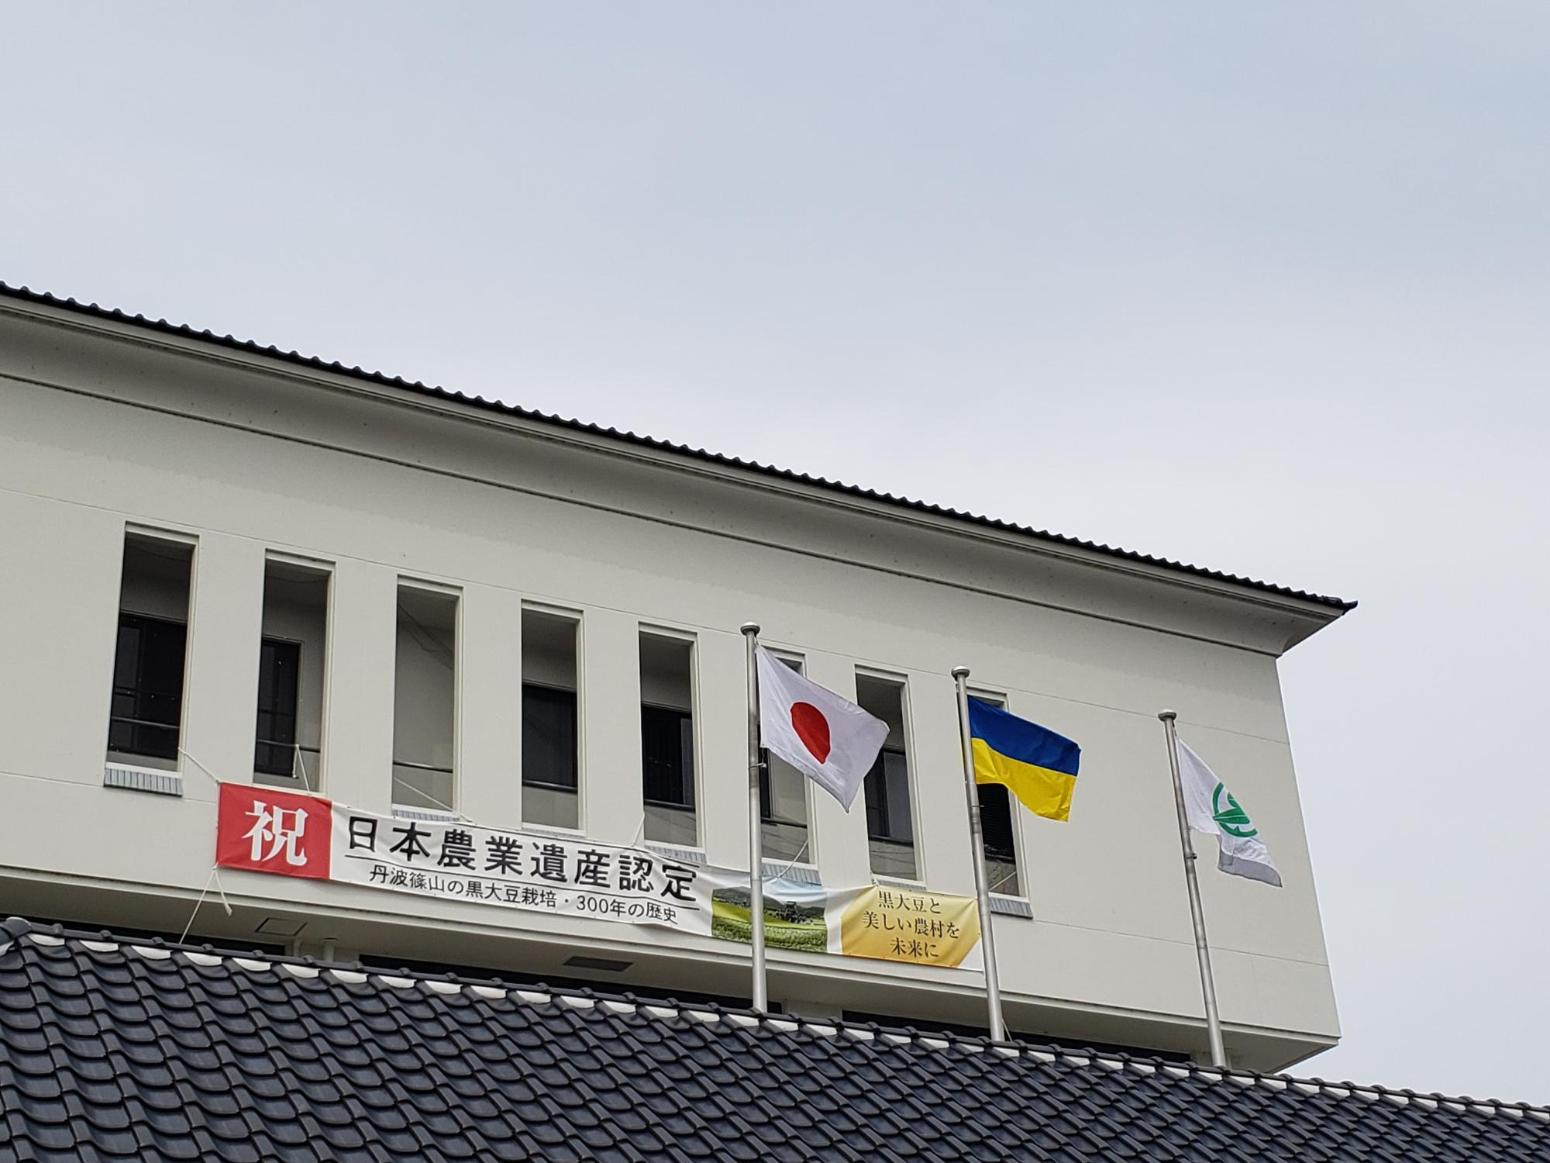 市役所庁舎に左から国旗、ウクライナ国旗、市旗が掲揚されている